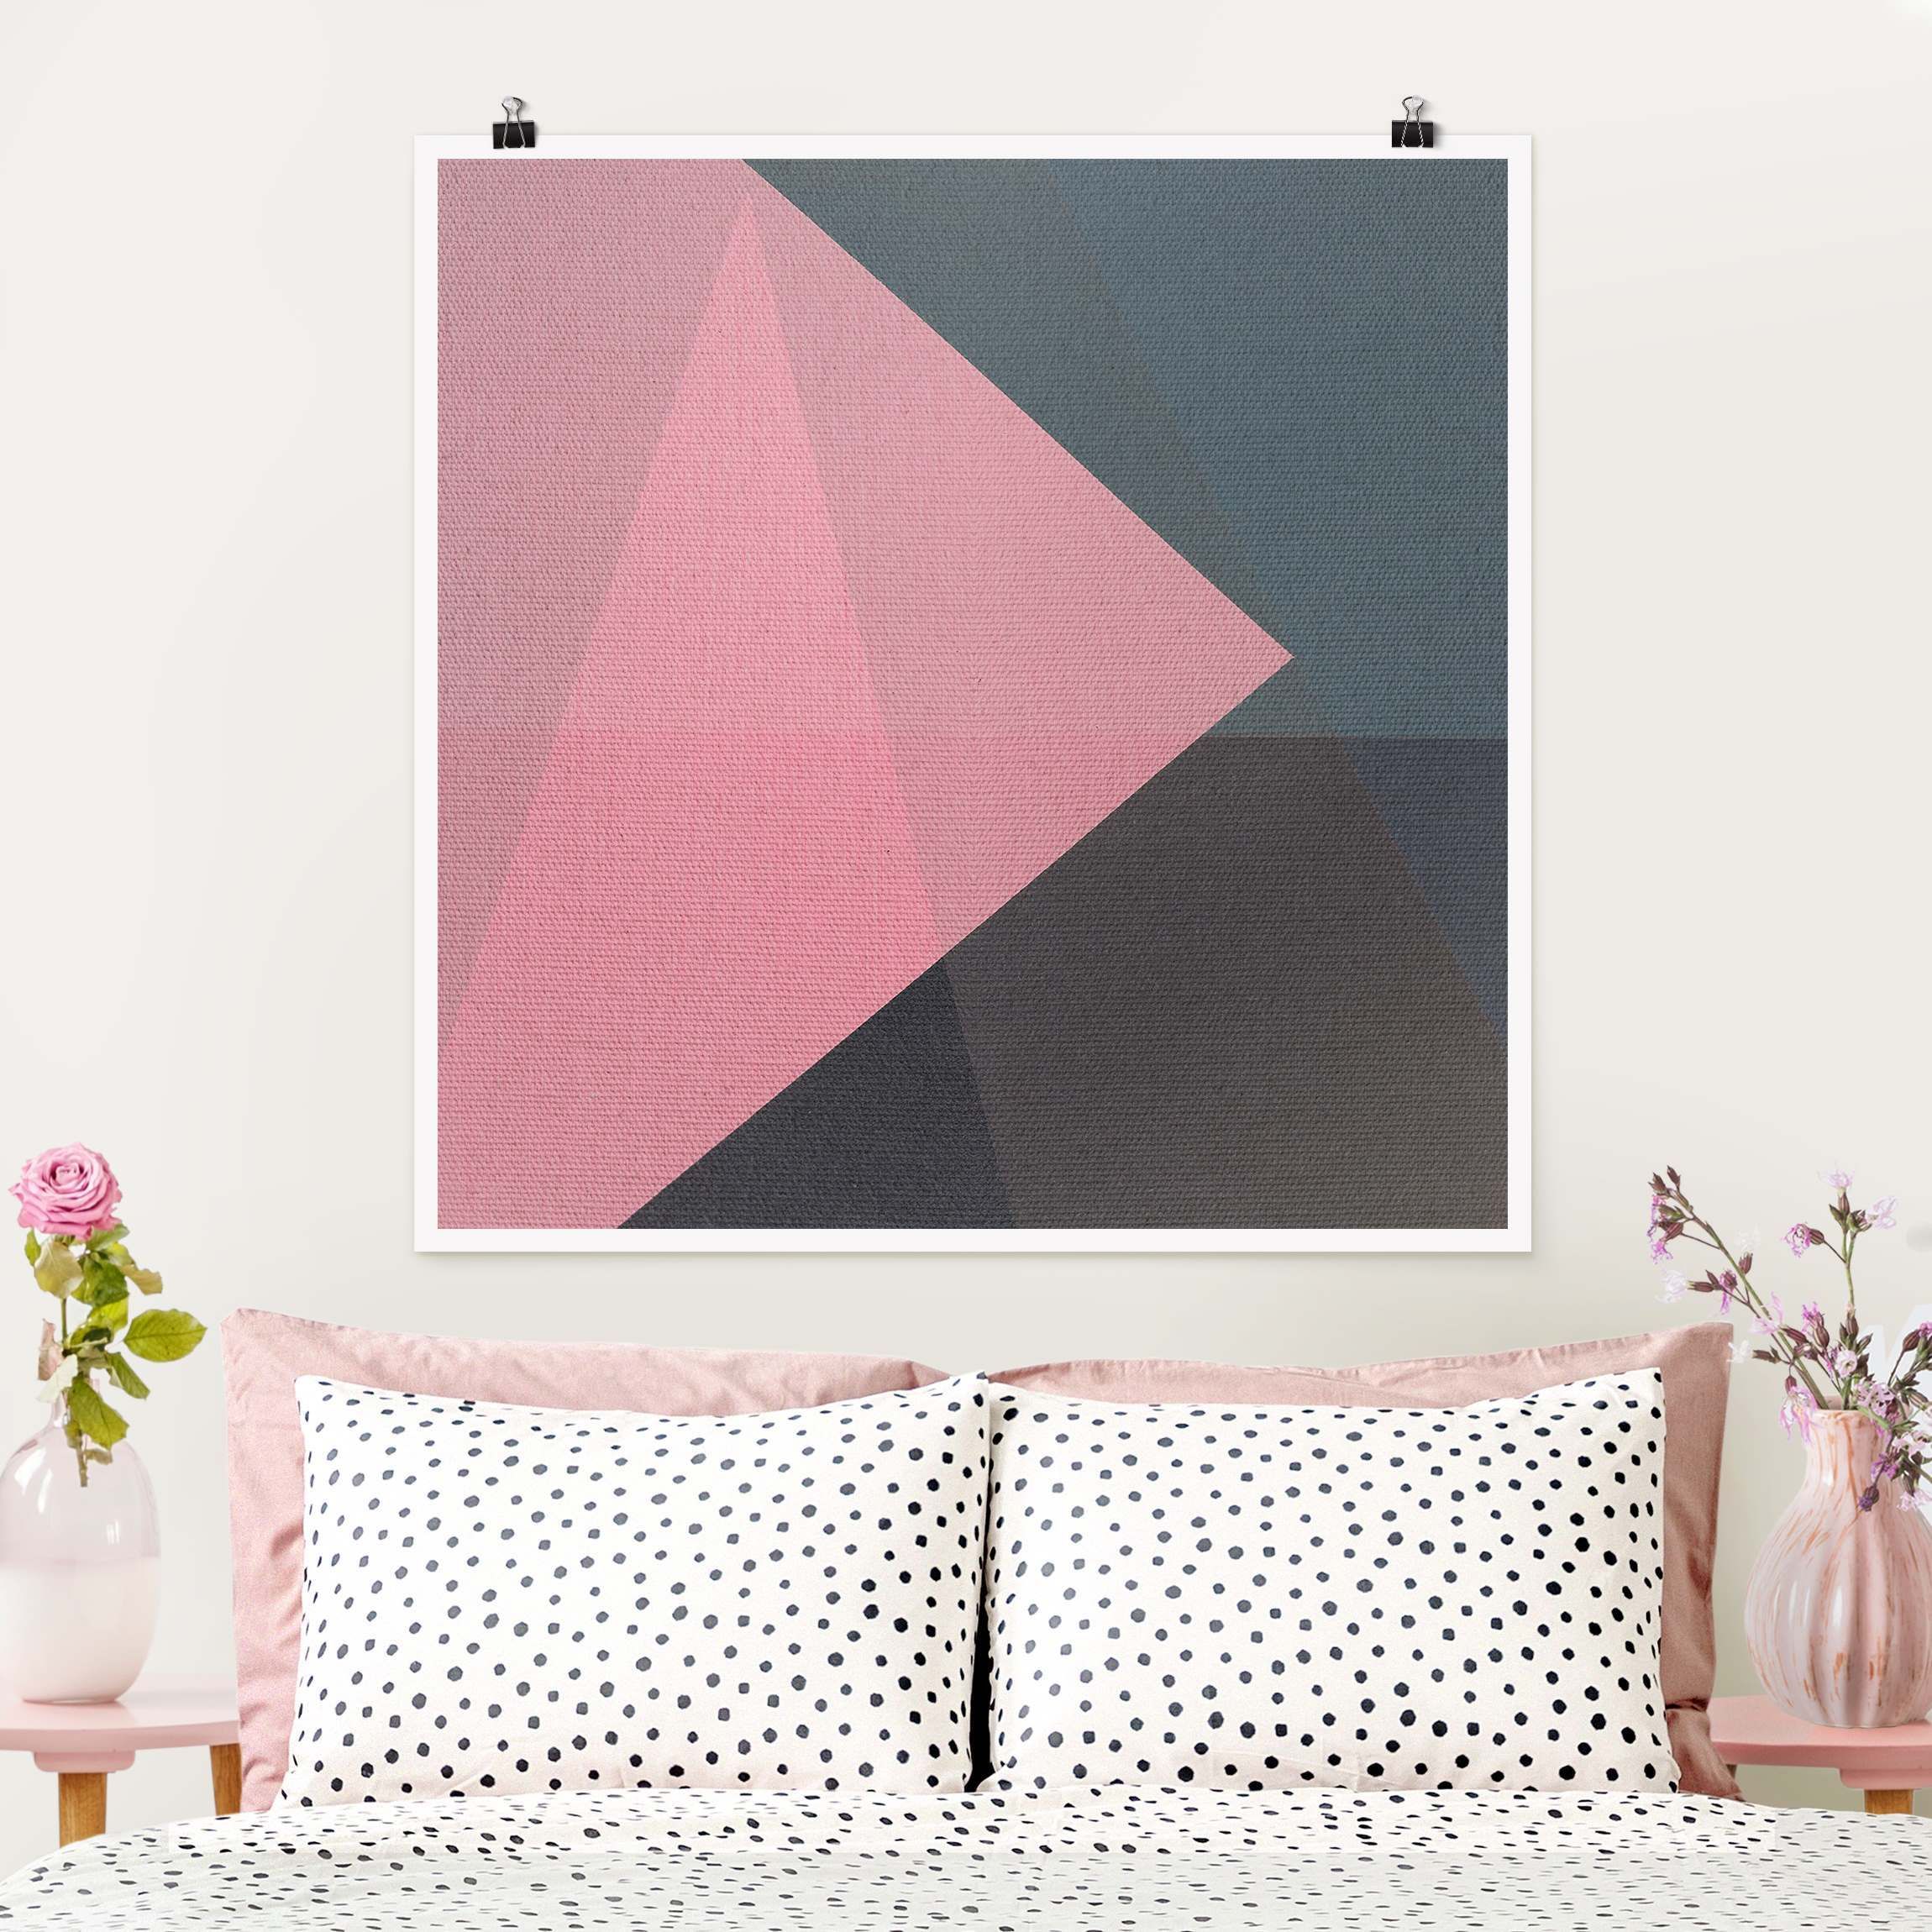 Rosa Transparenz Geometrie Poster als Quadrat | Poster bestellen bei WALLART